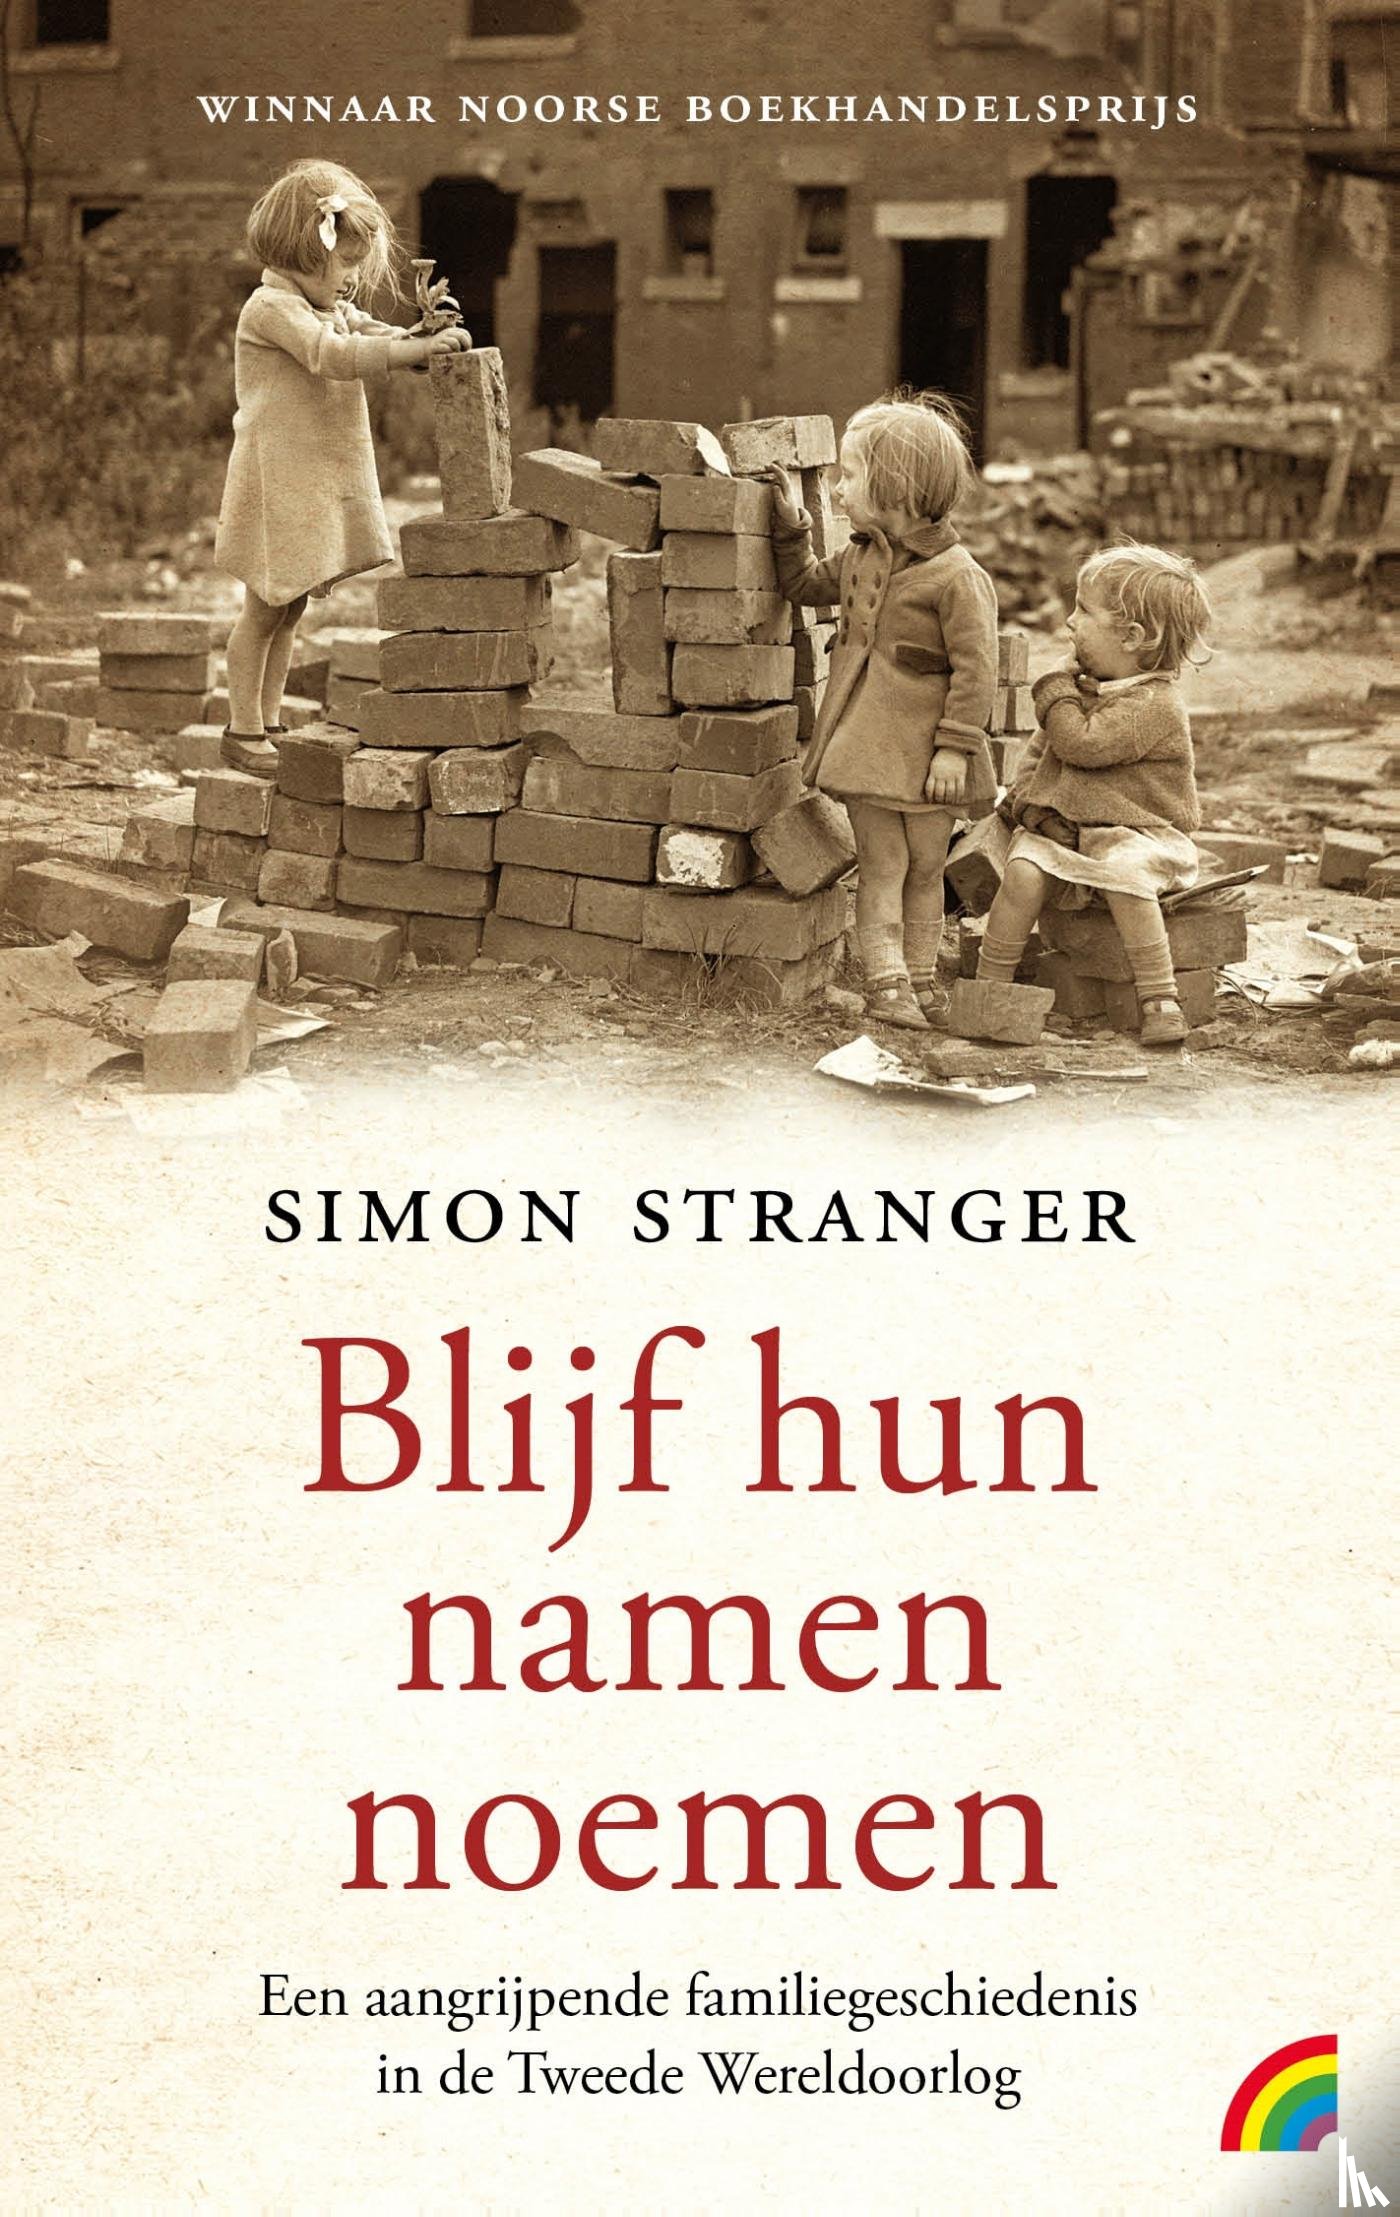 Stranger, Simon - Blijf hun namen noemen